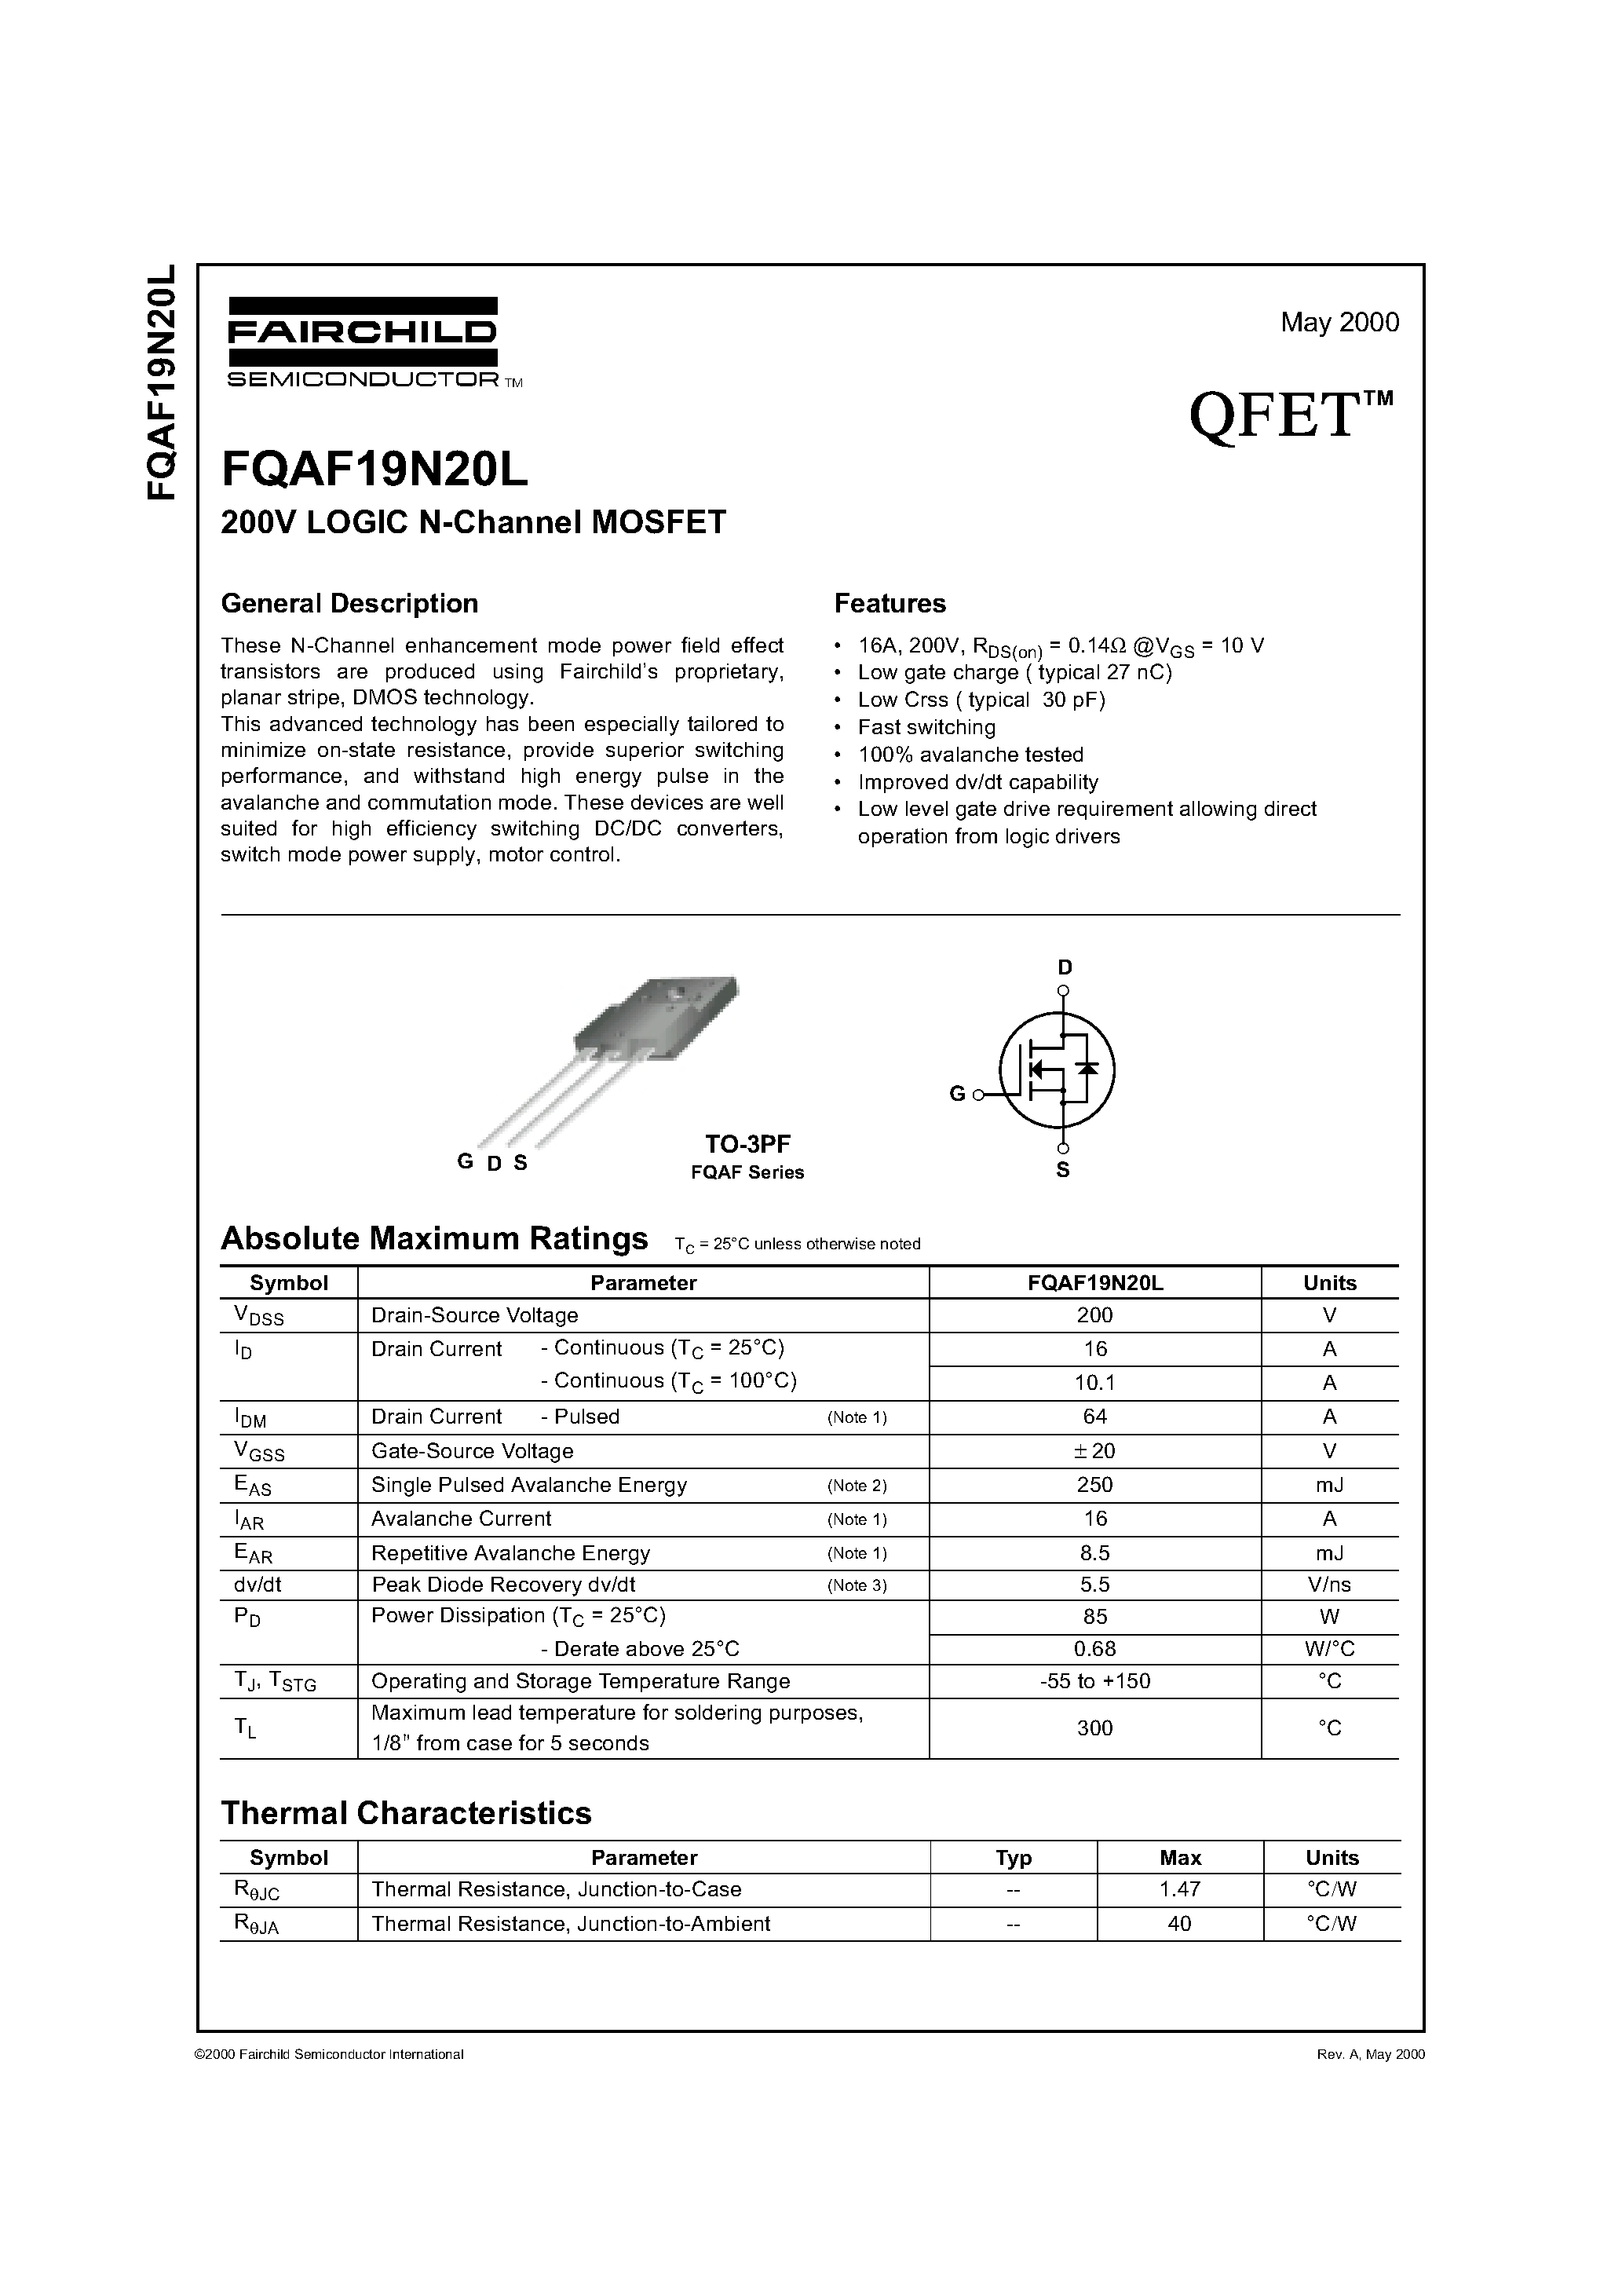 Datasheet FQAF19N20L - 200V LOGIC N-Channel MOSFET page 1